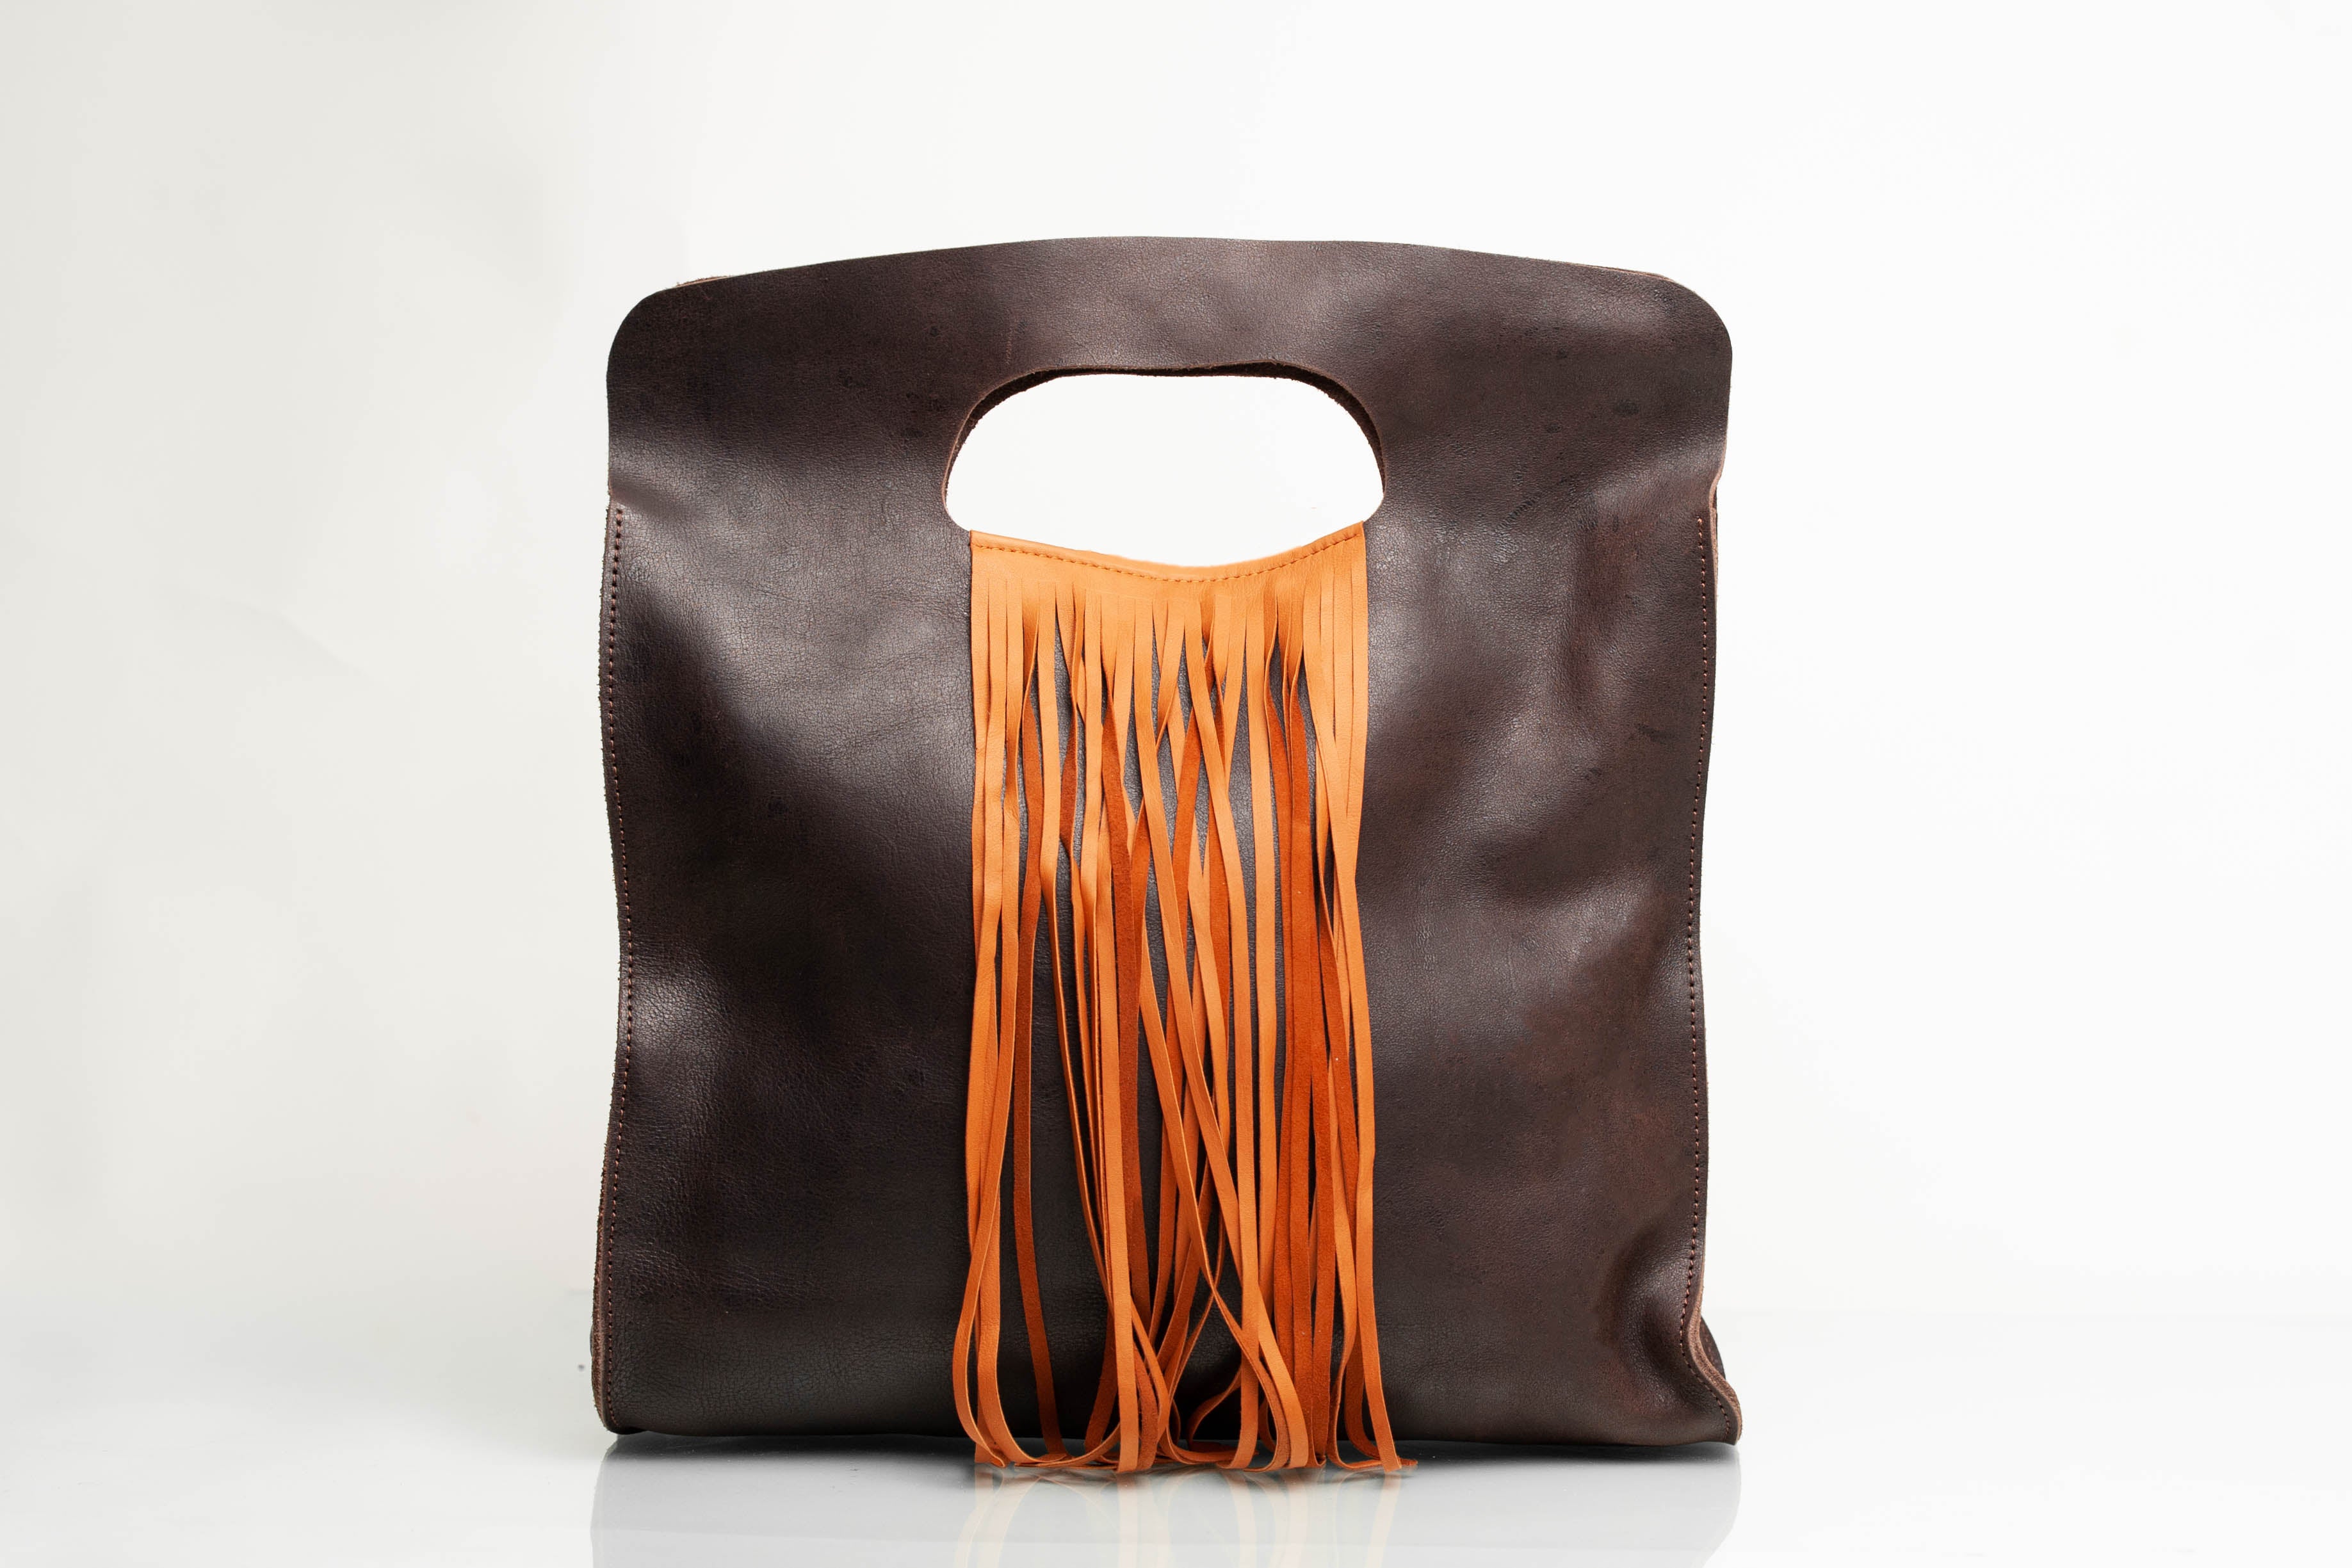 Ethiopian Leather Handbag with Fringe